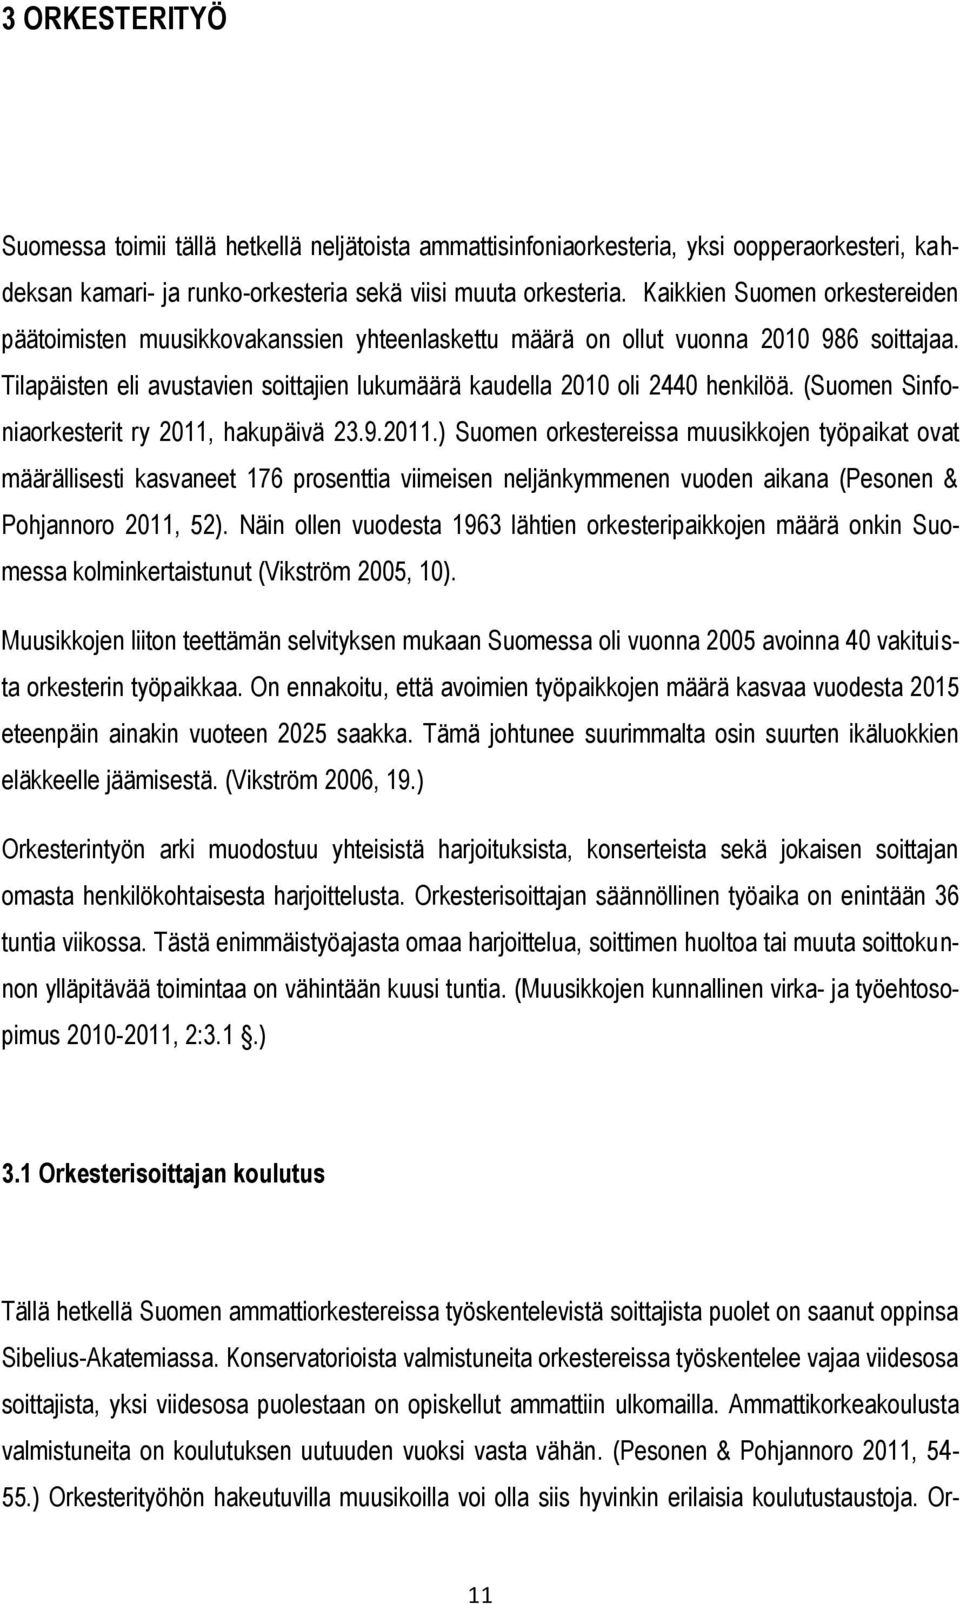 (Suomen Sinfoniaorkesterit ry 2011, hakupäivä 23.9.2011.) Suomen orkestereissa muusikkojen työpaikat ovat määrällisesti kasvaneet 176 prosenttia viimeisen neljänkymmenen vuoden aikana (Pesonen & Pohjannoro 2011, 52).